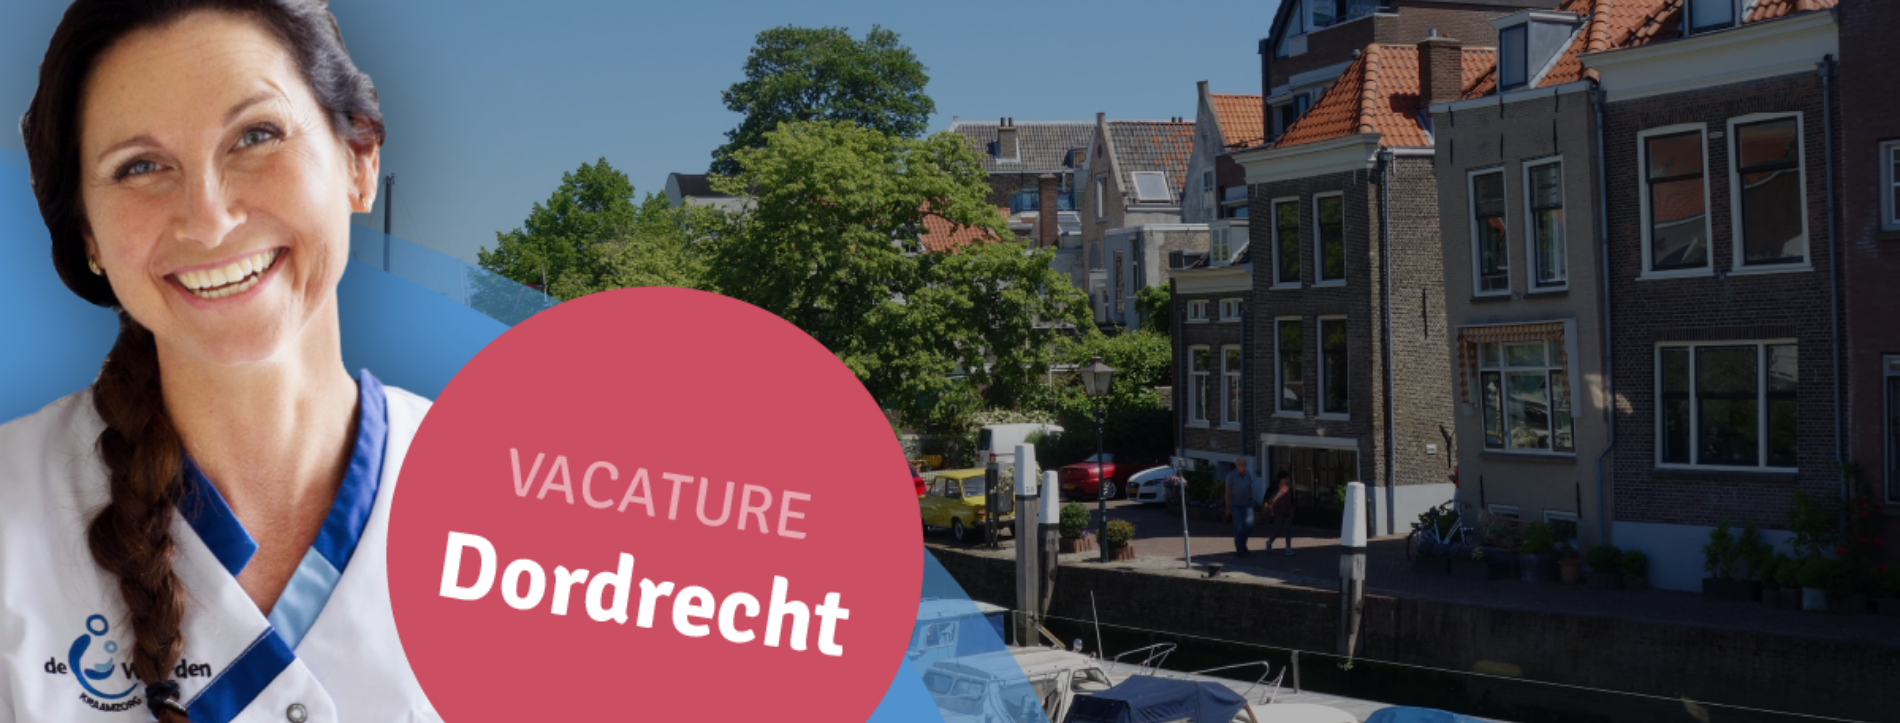 Groot Vacature WidK Dordrecht